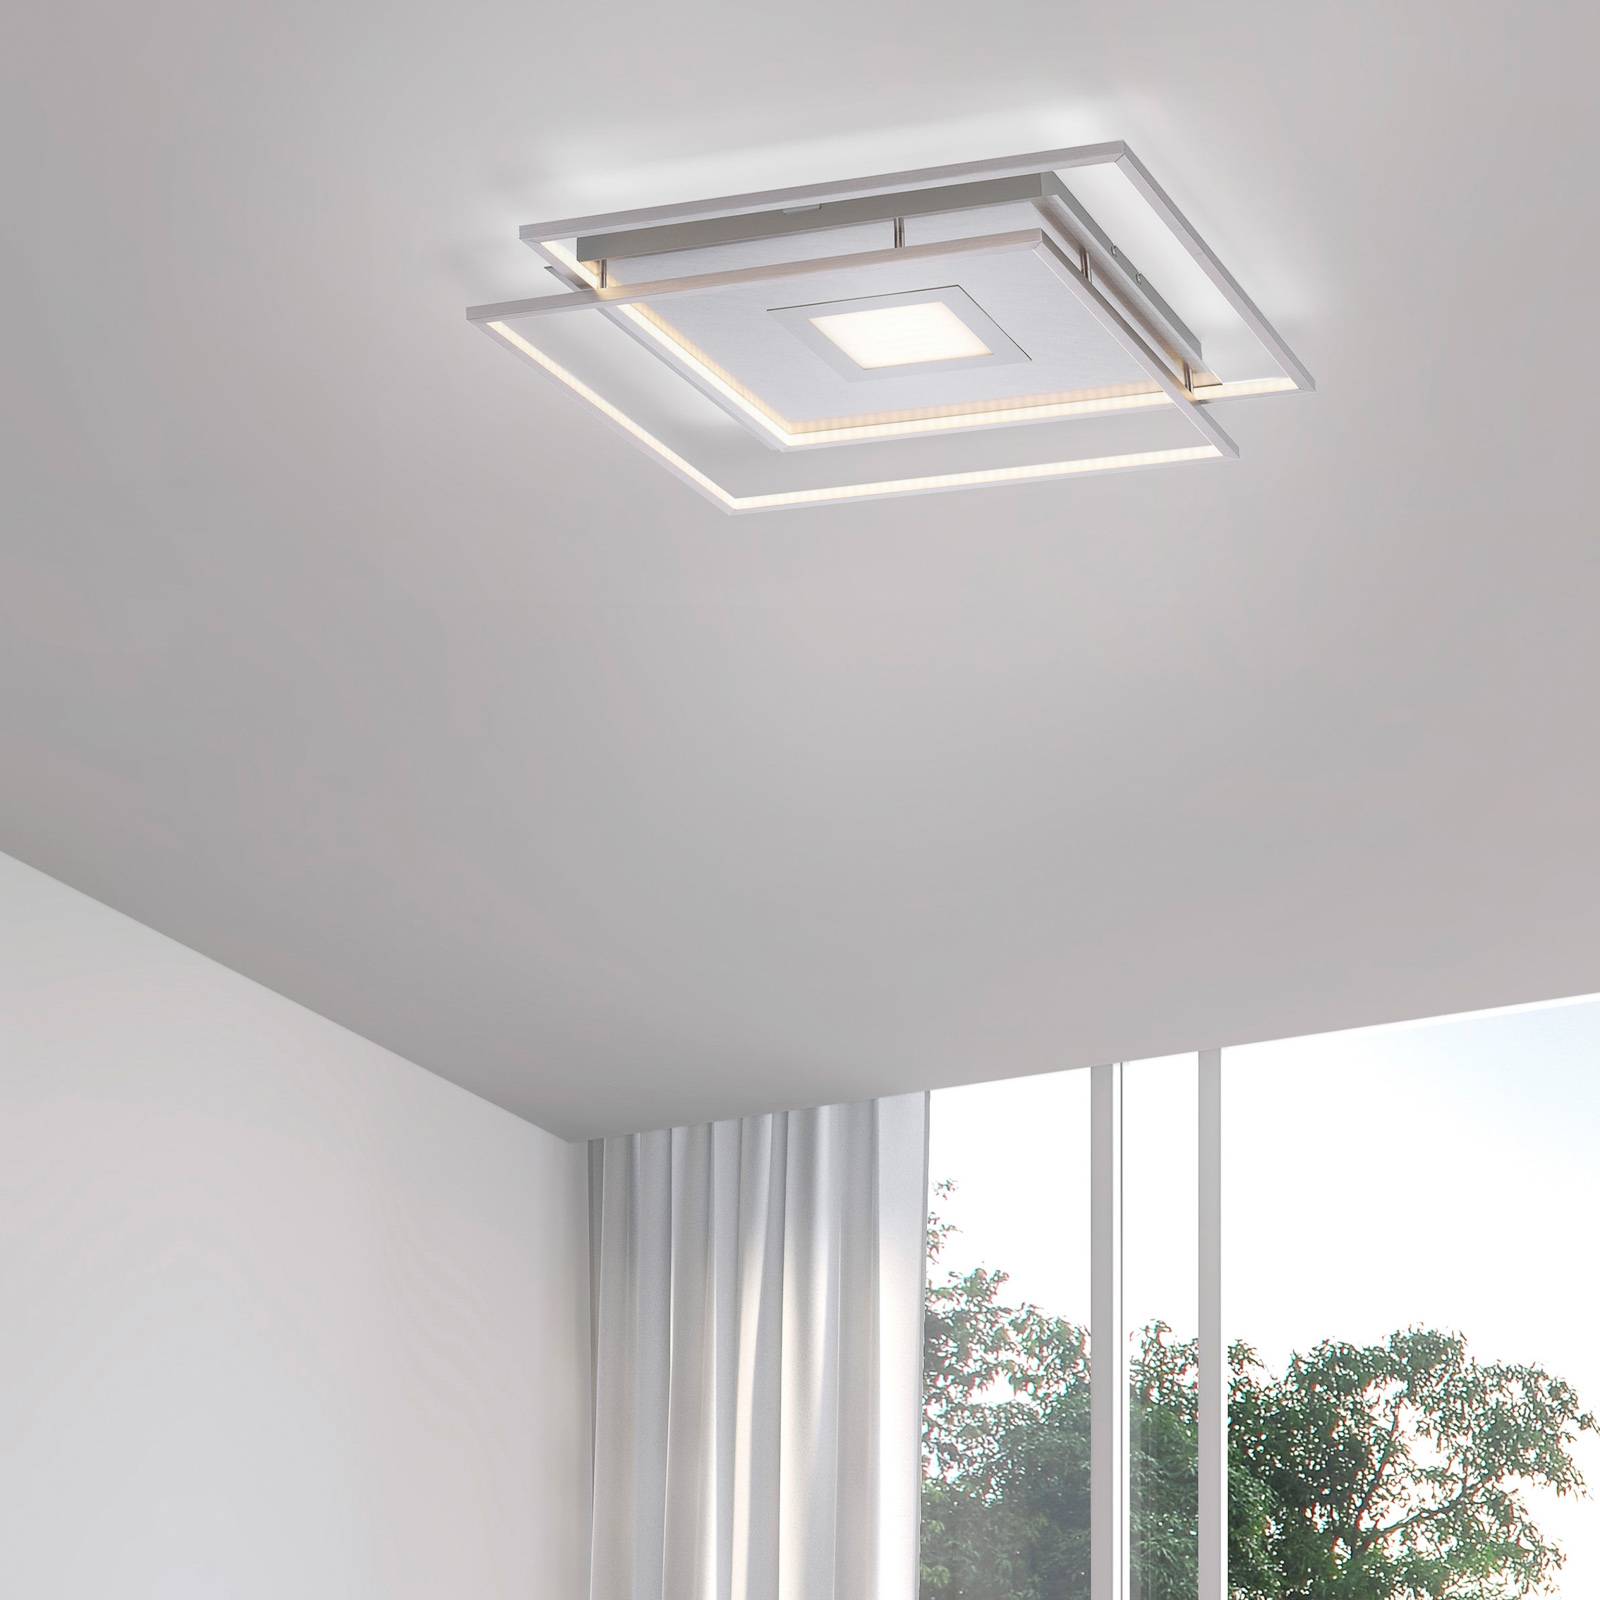 Image of Q-Smart-Home Paul Neuhaus Q-AMIRA plafonnier LED, argenté 4012248351437